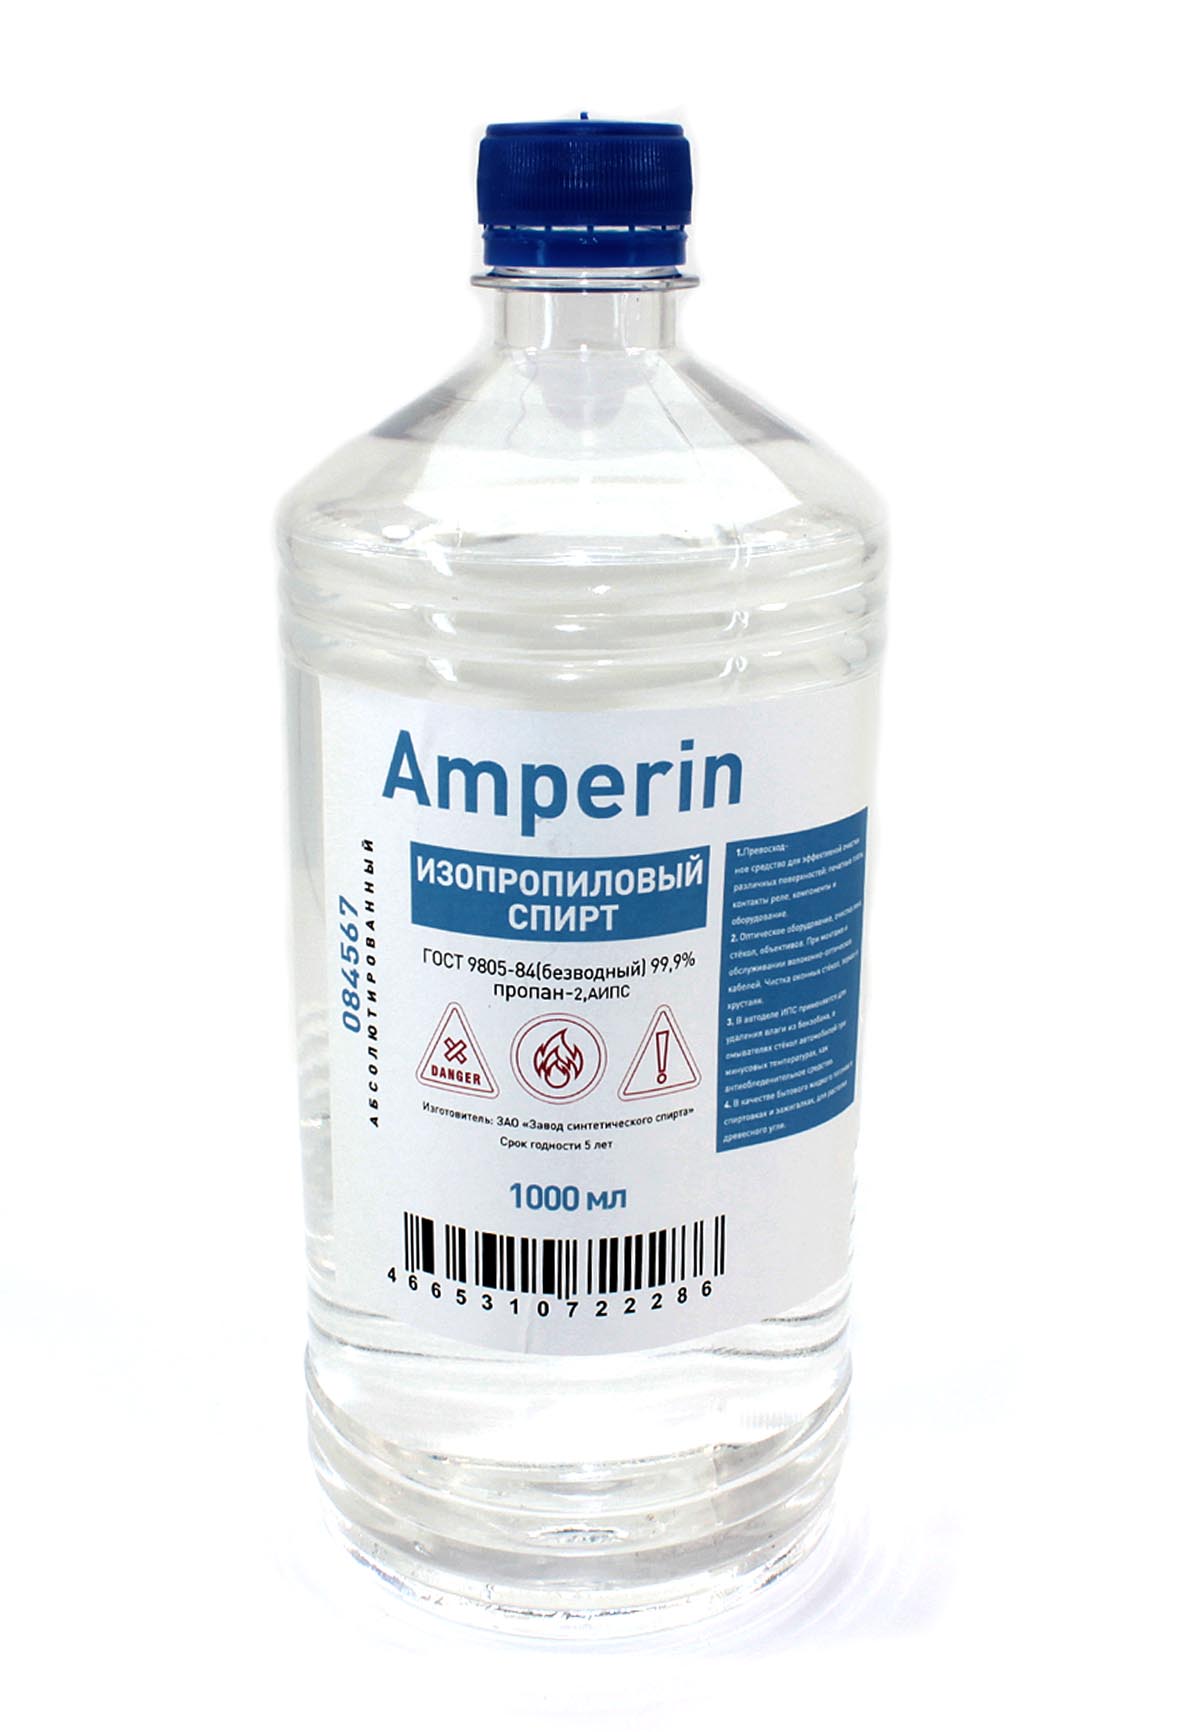 Купить спирт изопропиловый Amperin, бутылка - 1л.